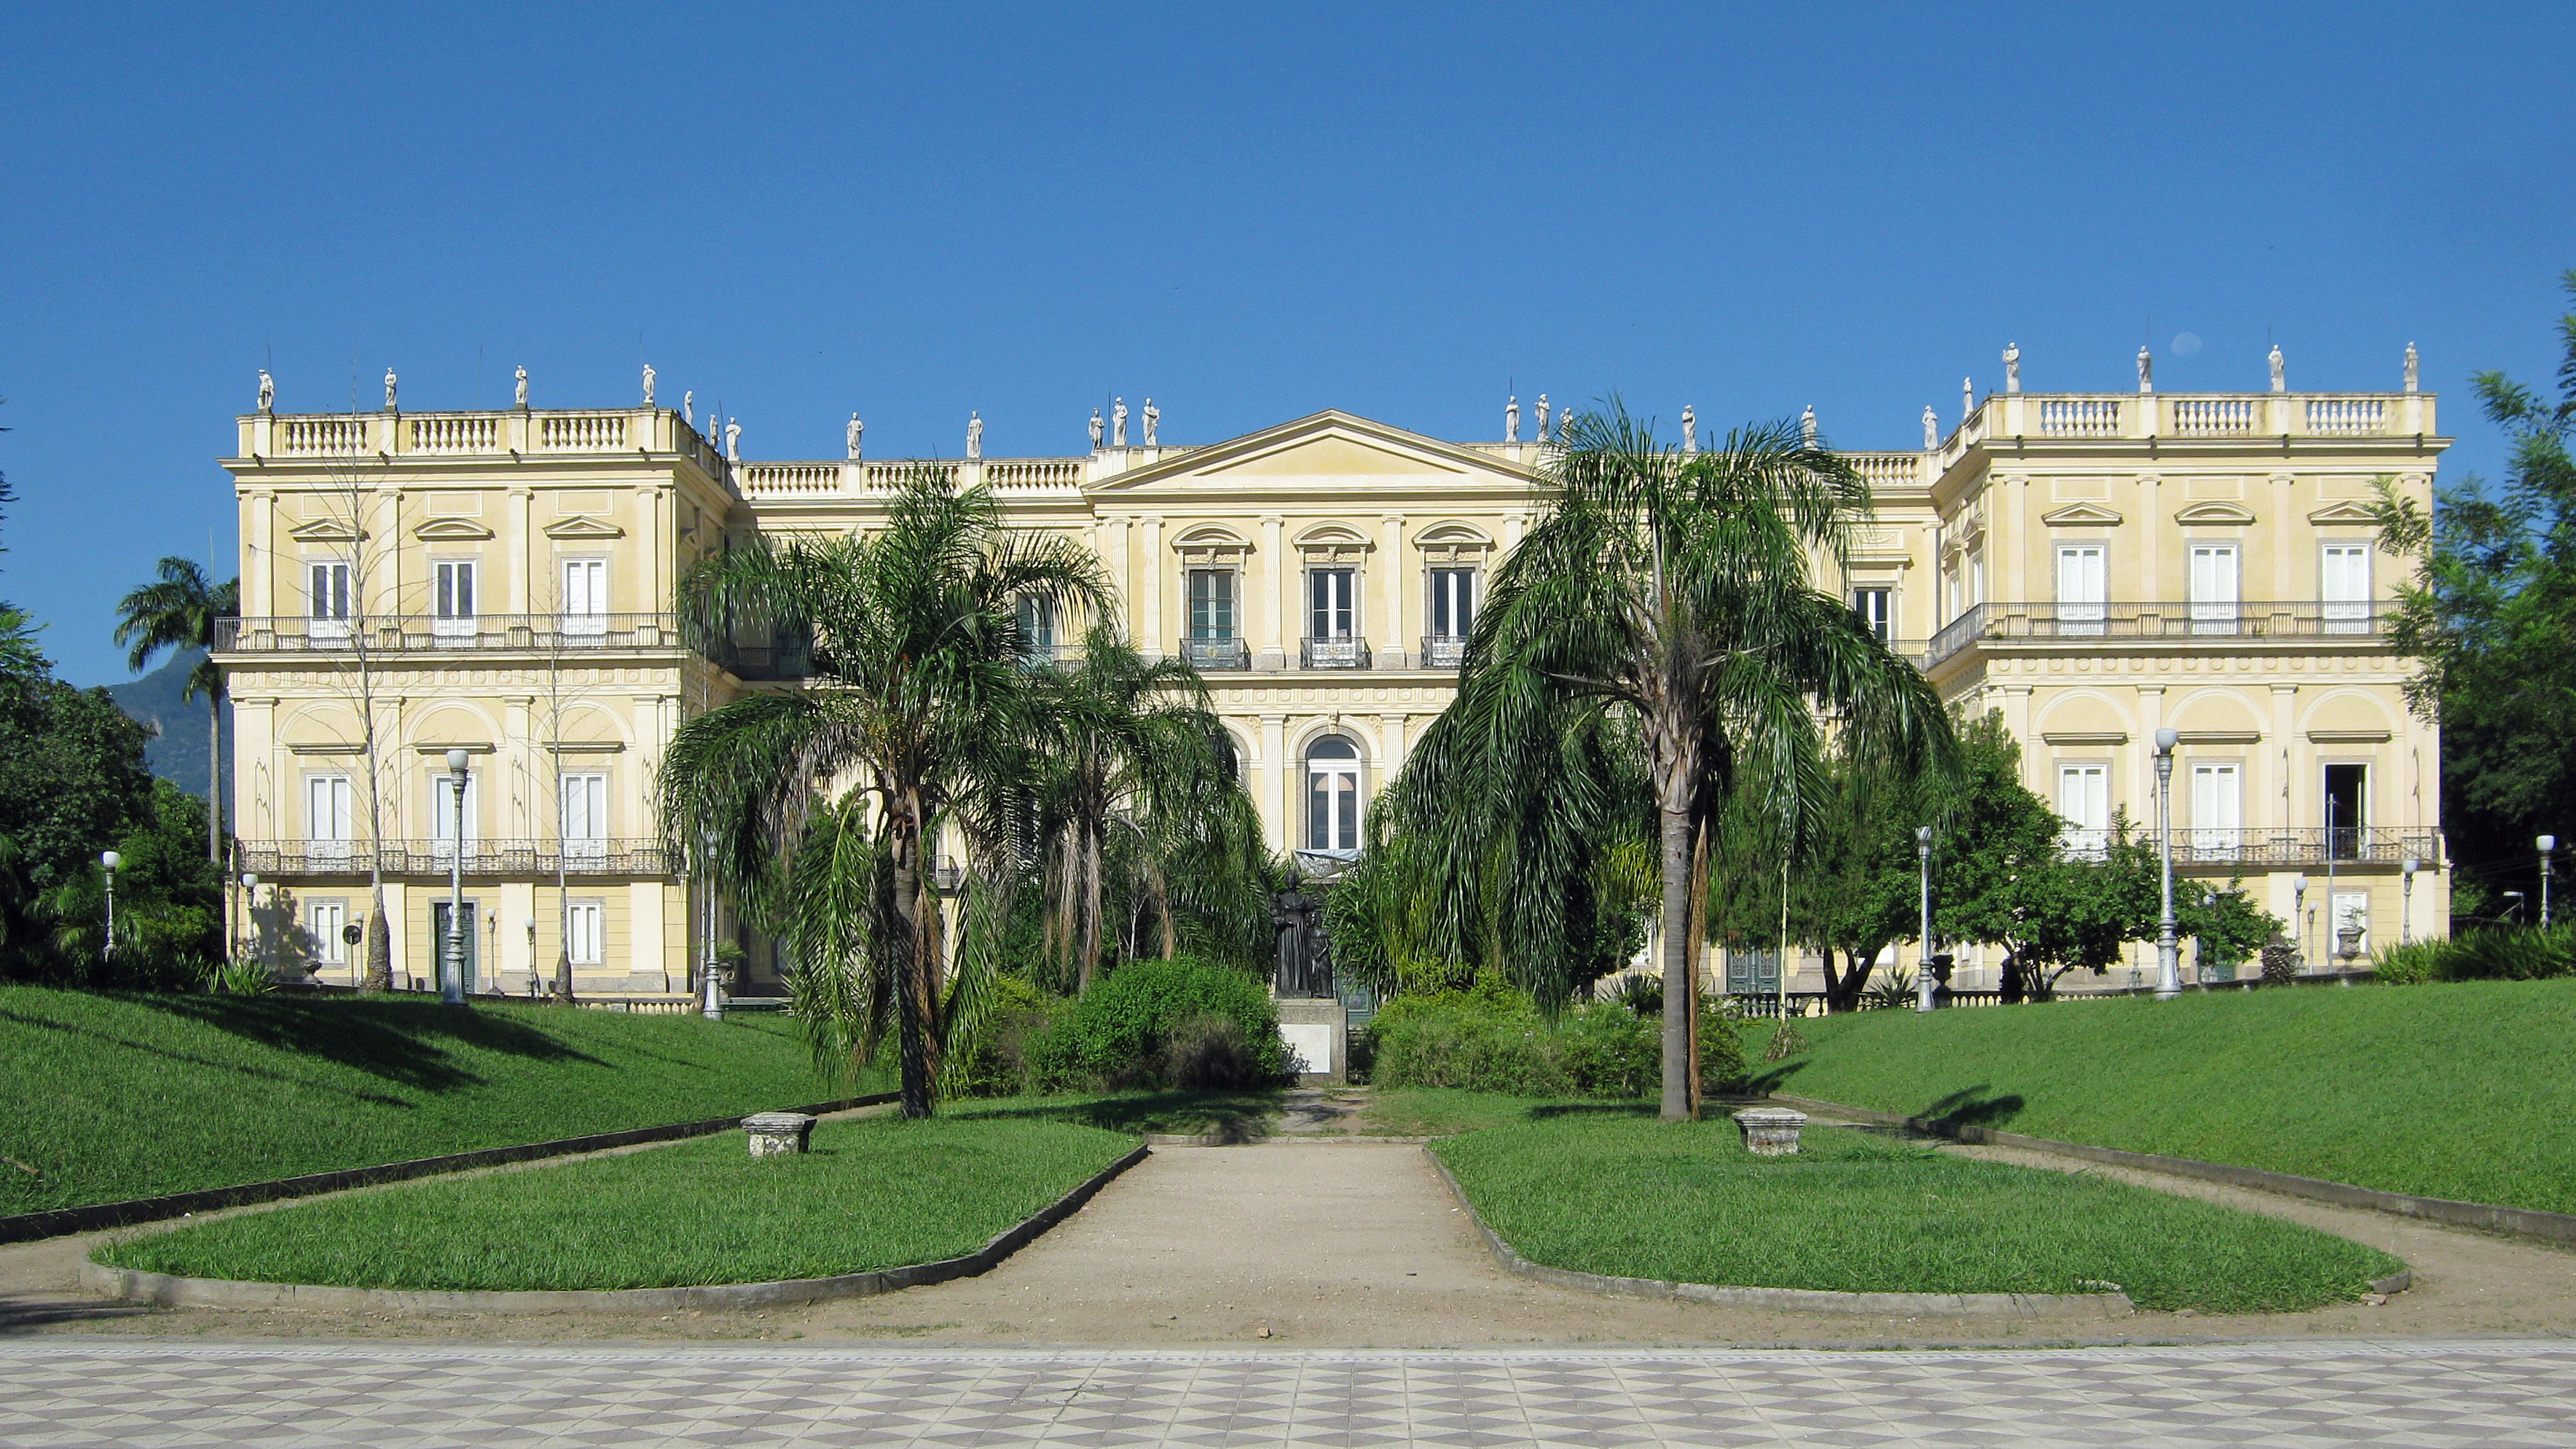 Quinta da Boa Vista Park and Museum